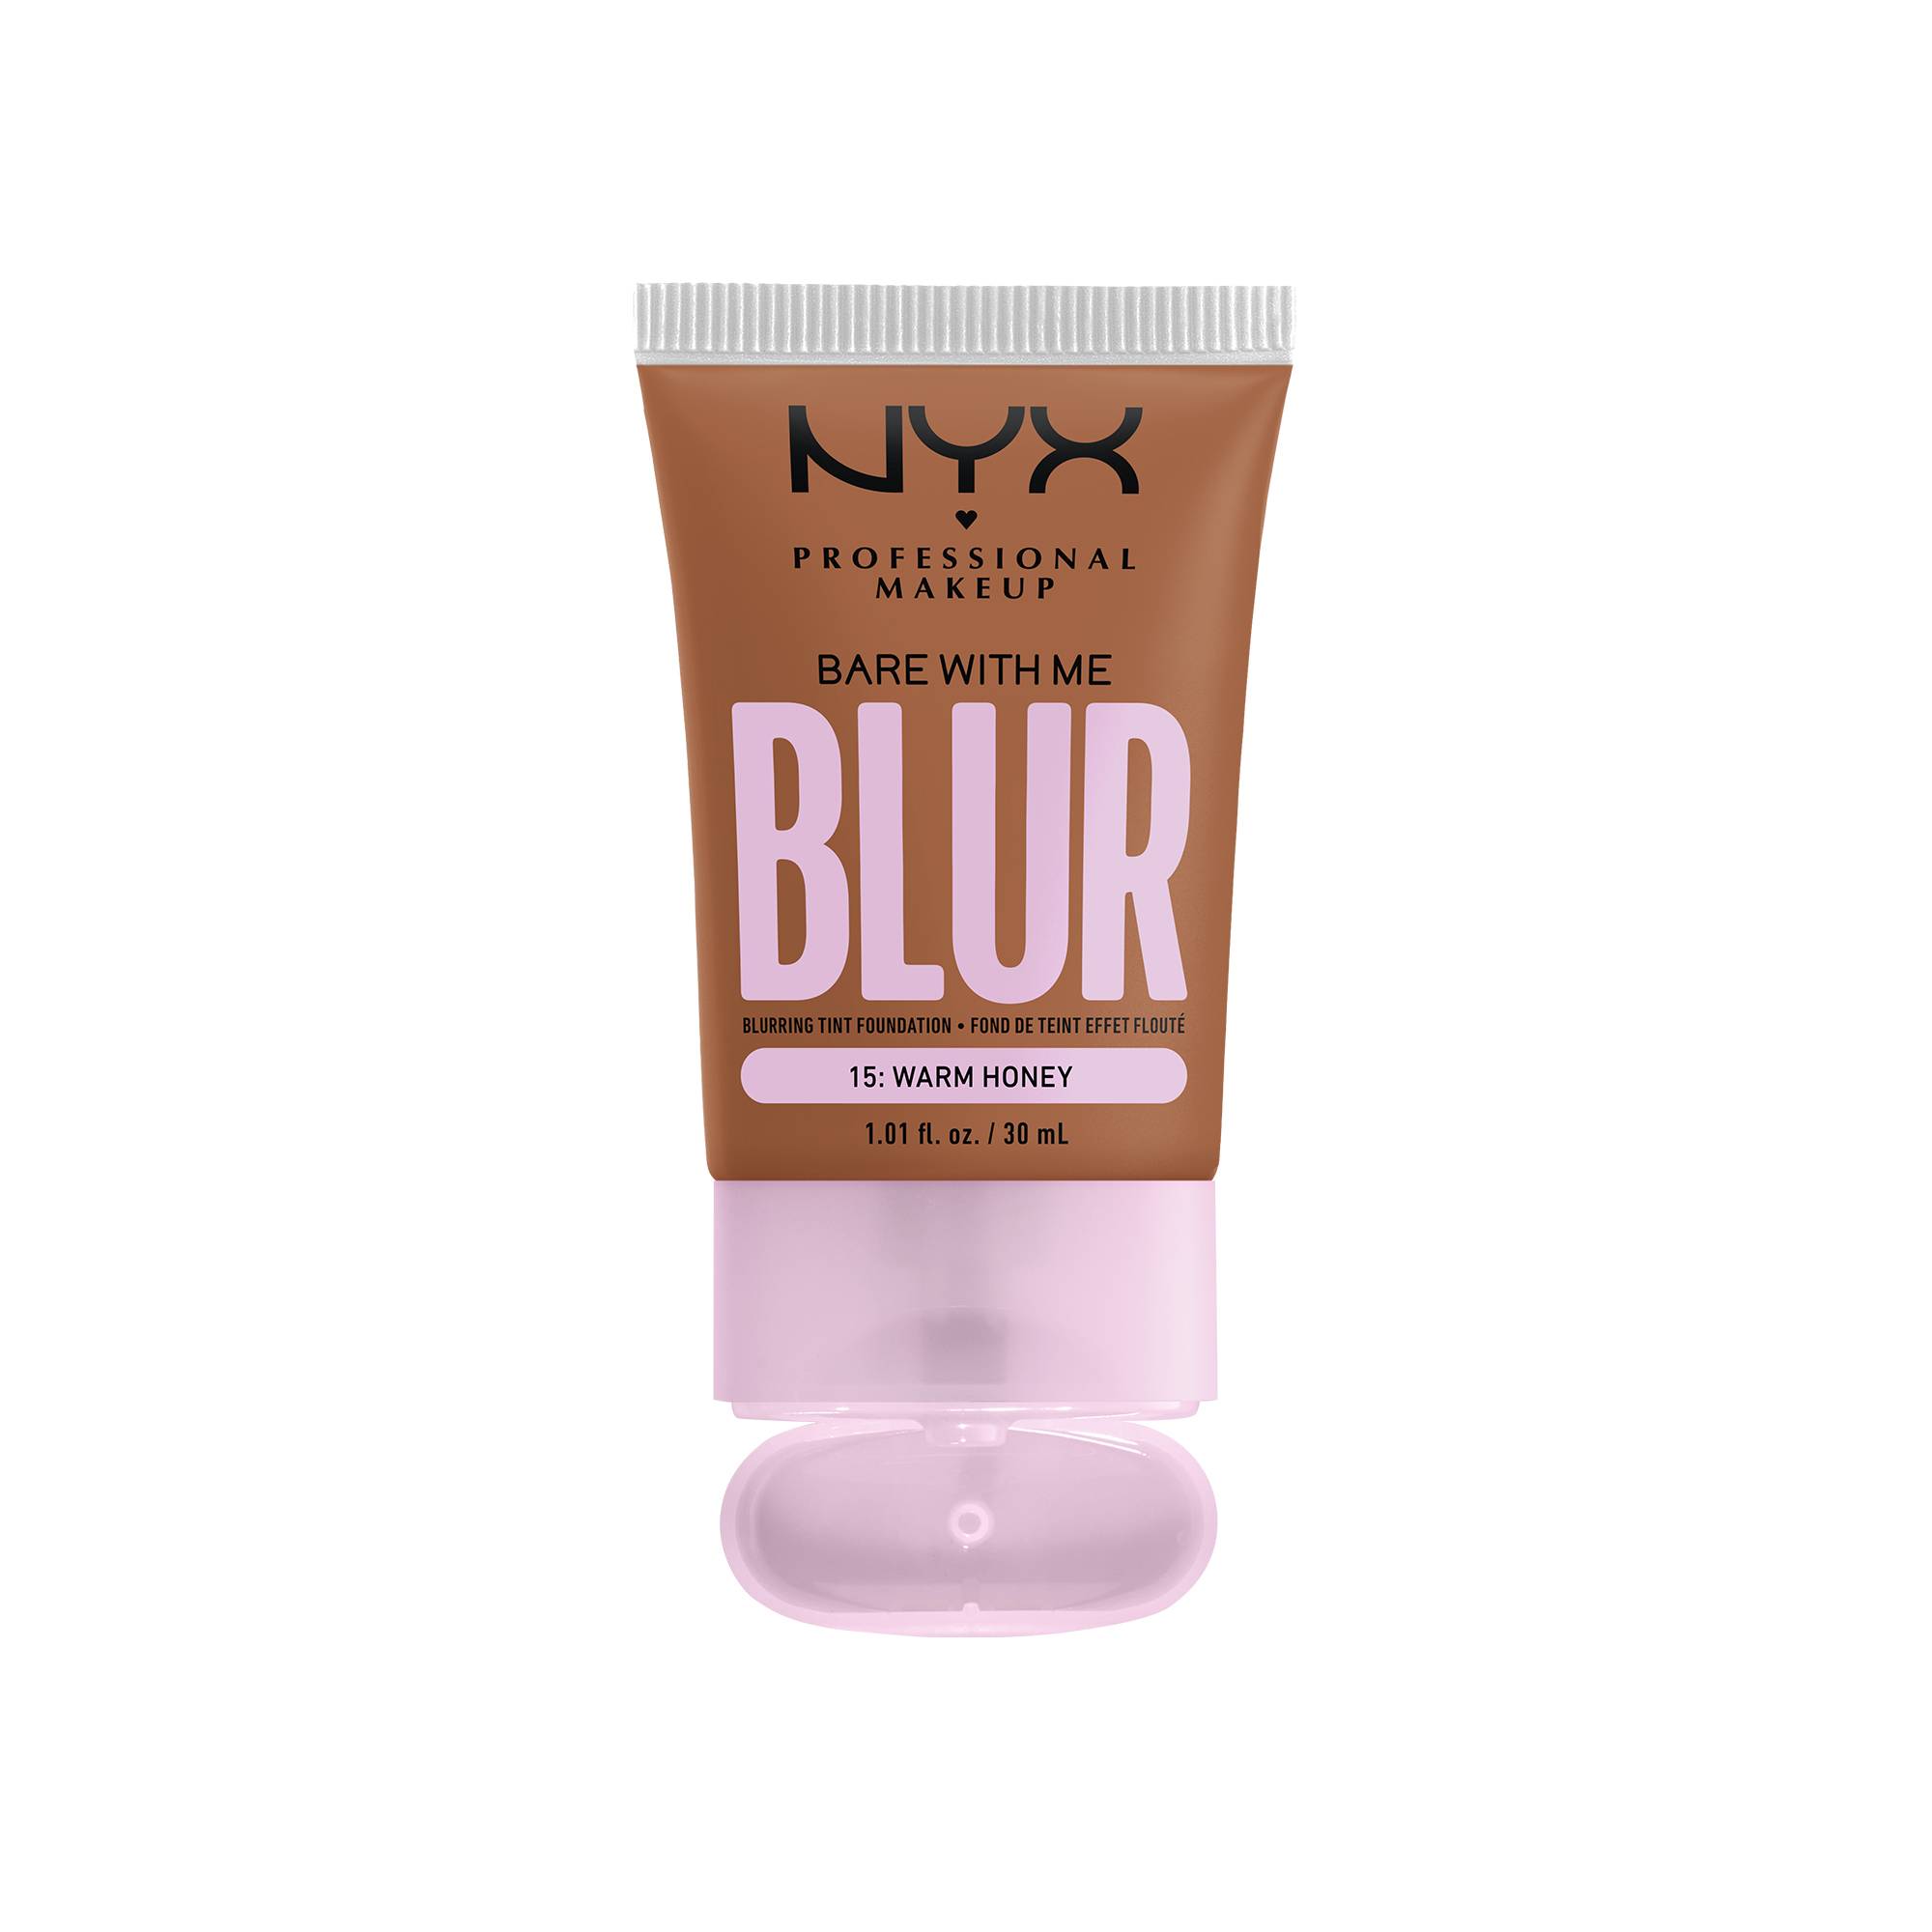 Fond de teint effet flouté Bare With Me Blur Warm Honey de la marque NYX Professional Makeup - 1